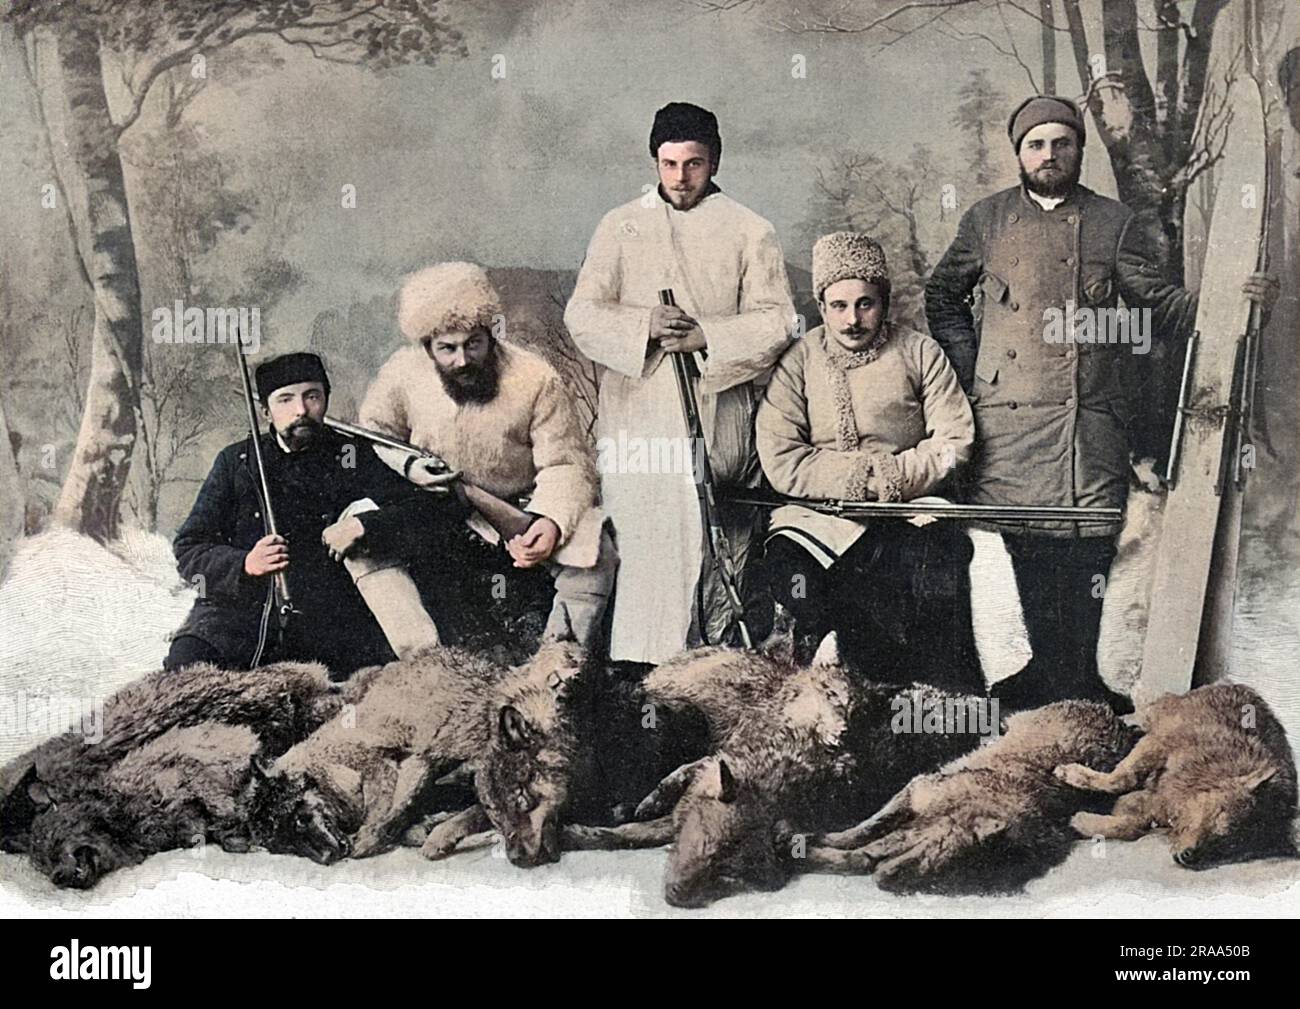 Les fils DE TOLSTOÏ après une expédition de chasse réussie, avec les corps de huit loups abattus sans raison évidente. Date: Vers 1900 Banque D'Images